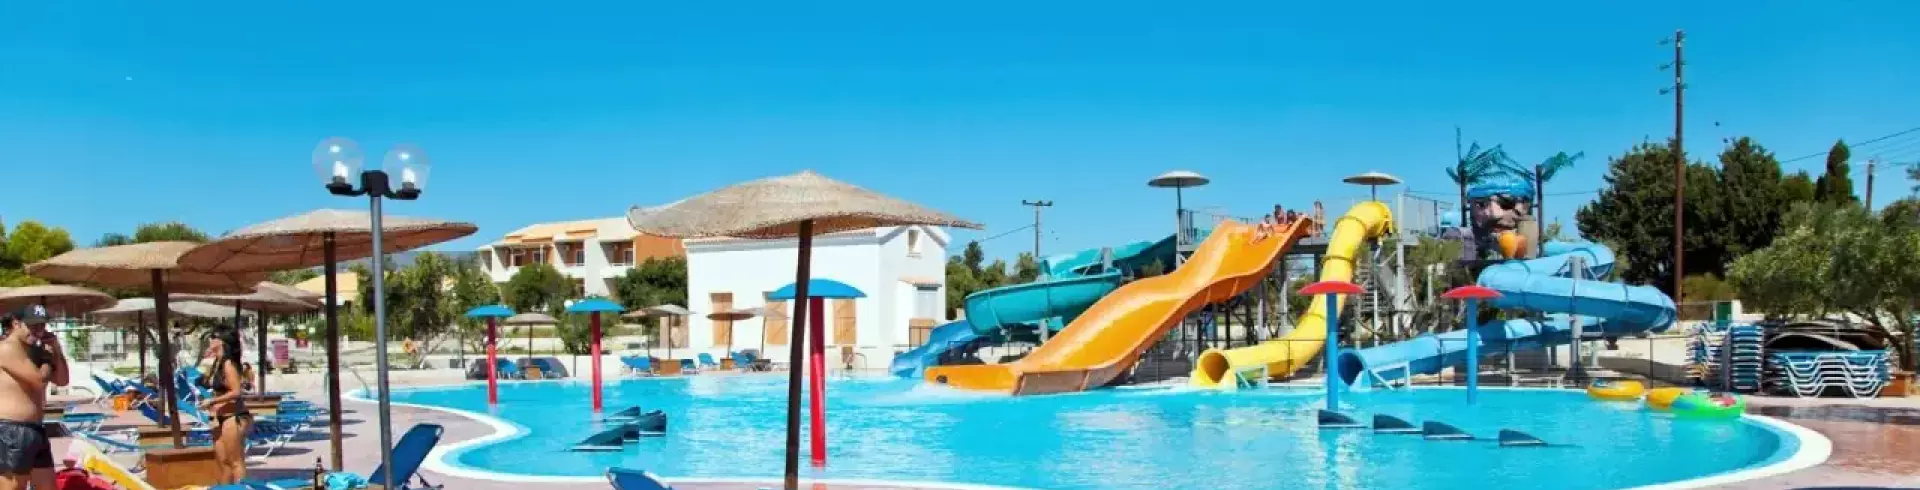 Hotel Ionian Sea & Aquapark